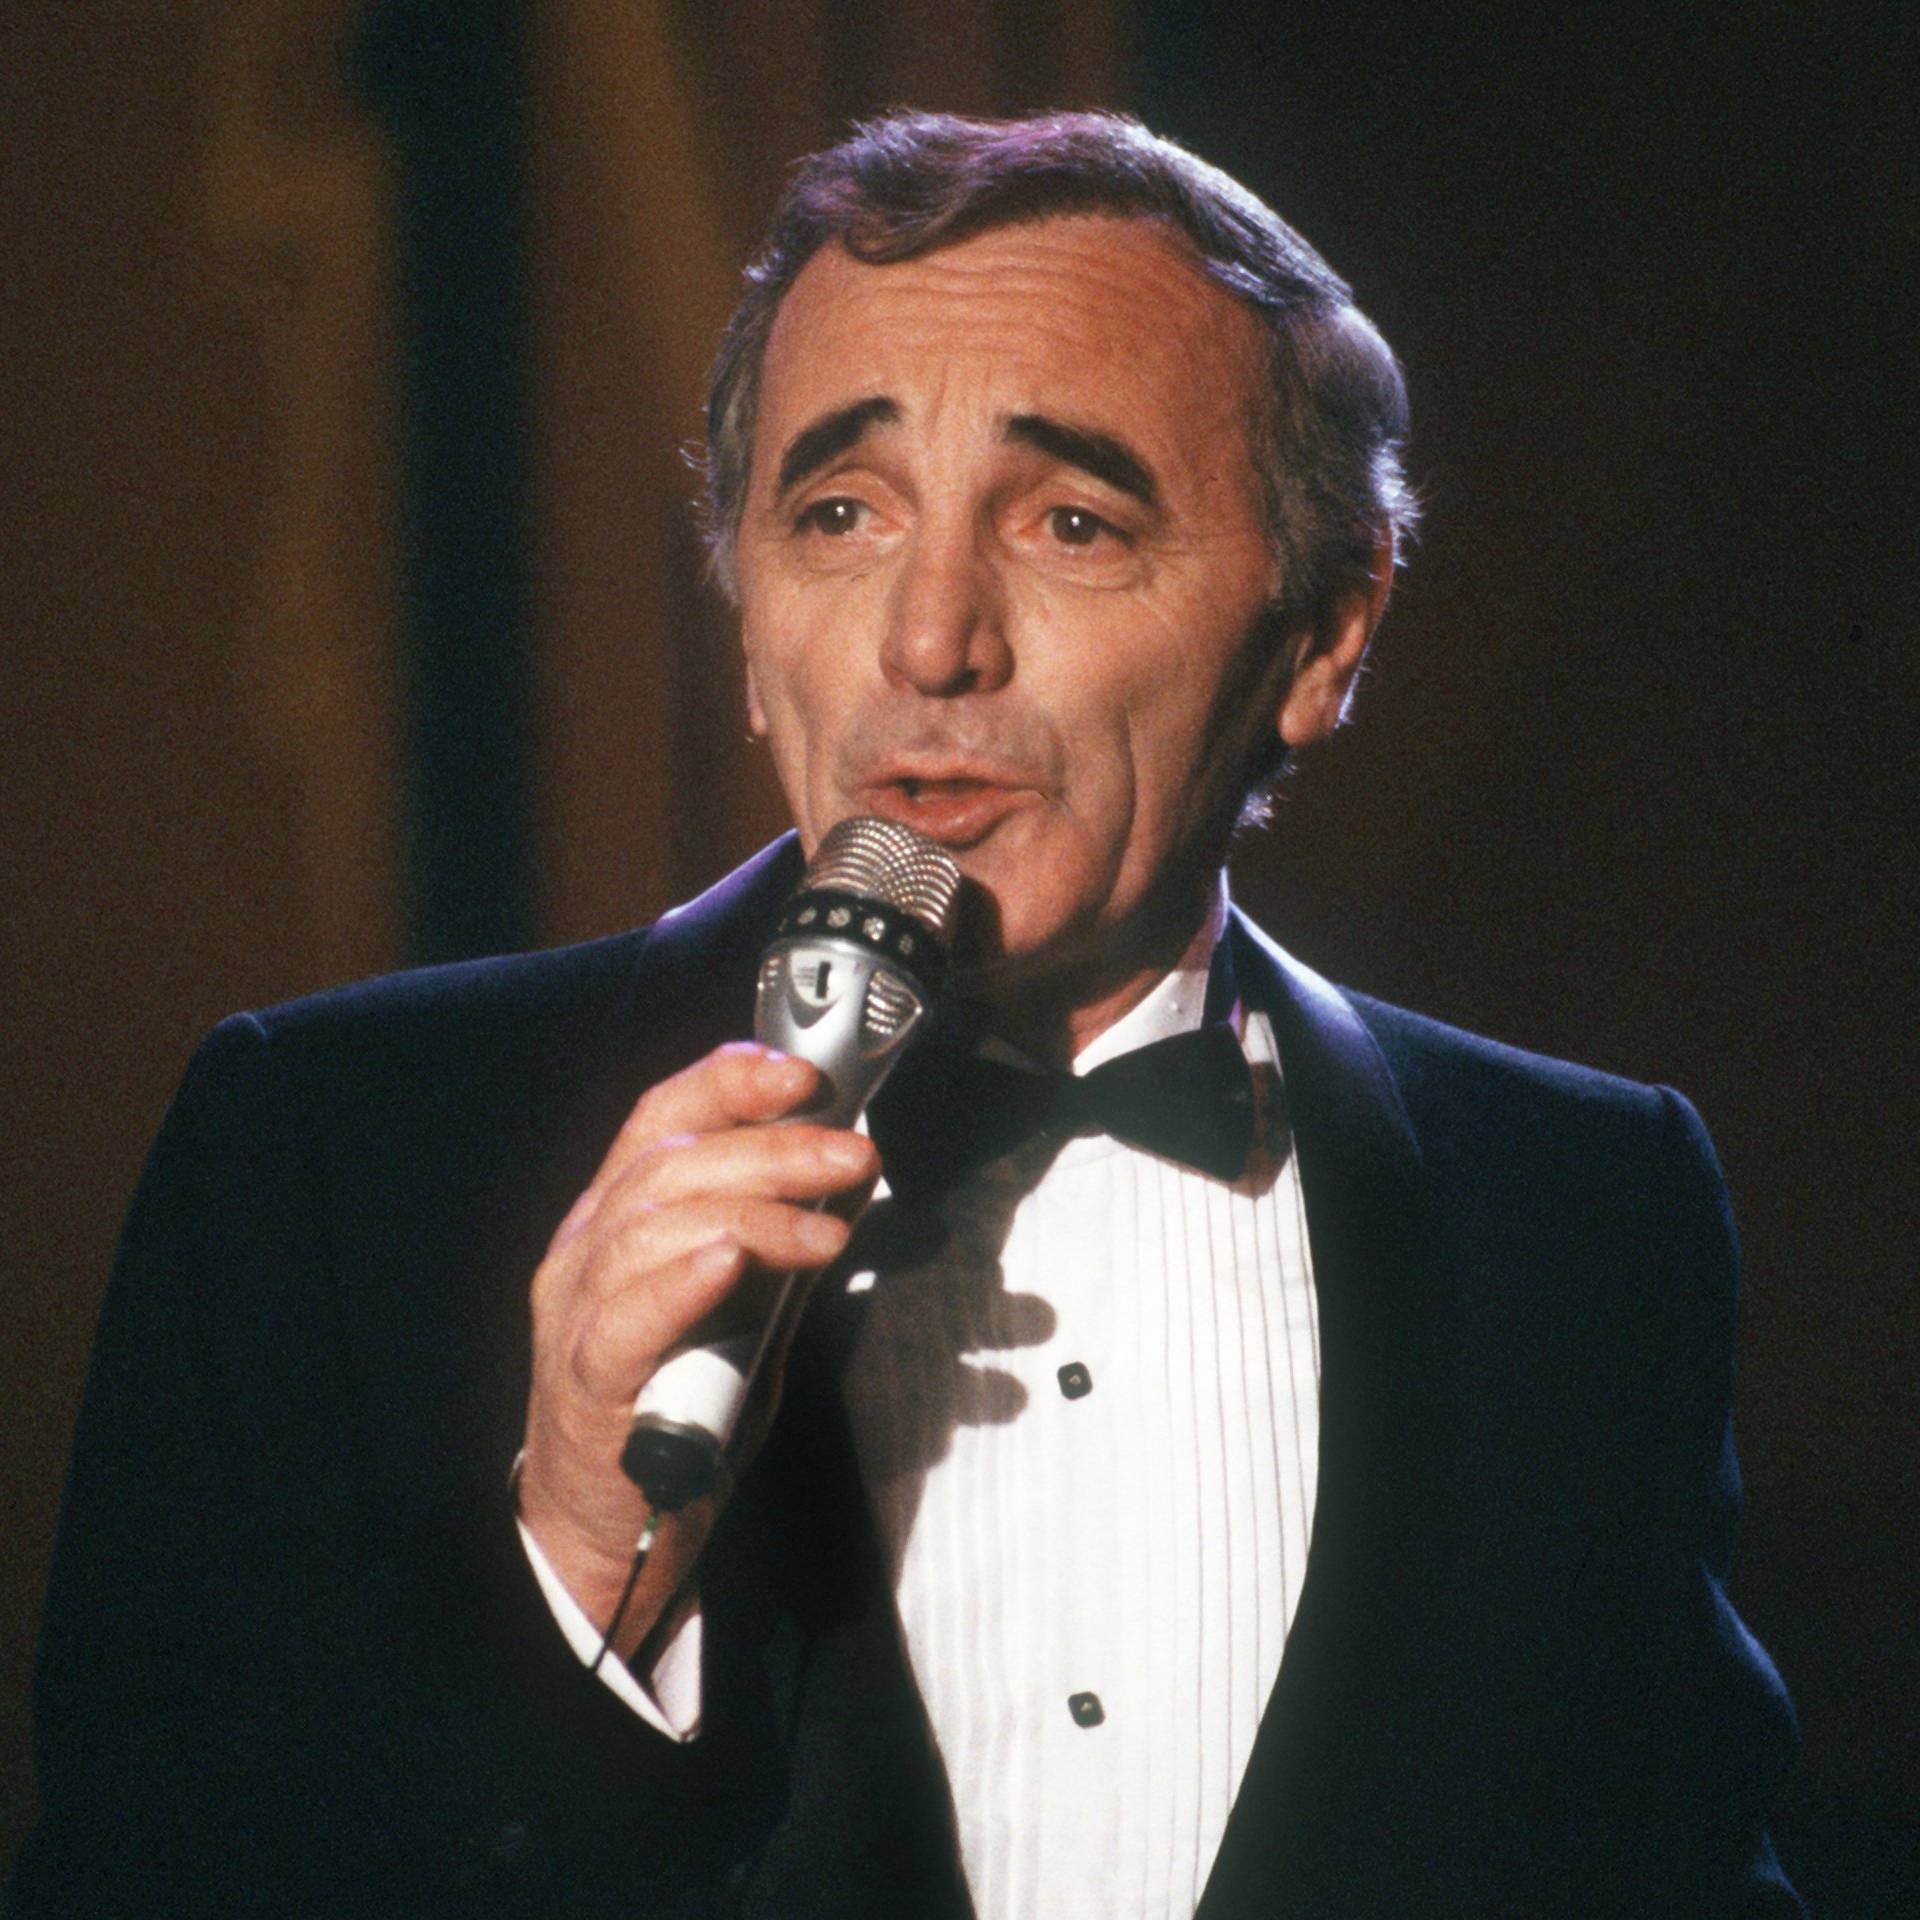 Charles Aznavour turns 75